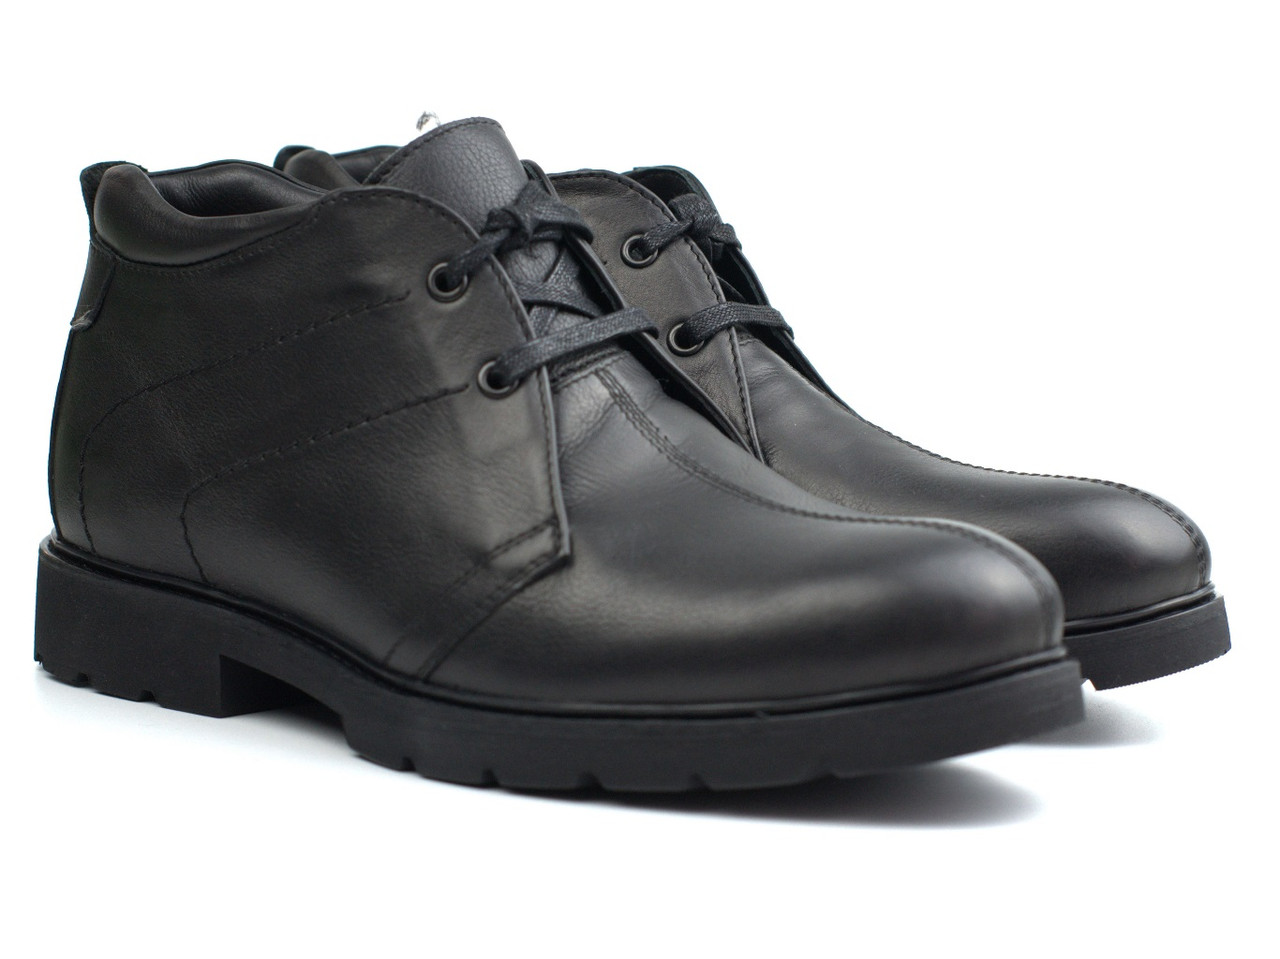 Классические зимние ботинки кожаные черные дезерты мужская обувь на меху  Rosso Avangard Carlo Pa20, цена 2320 грн — Prom.ua (ID#1096728295)